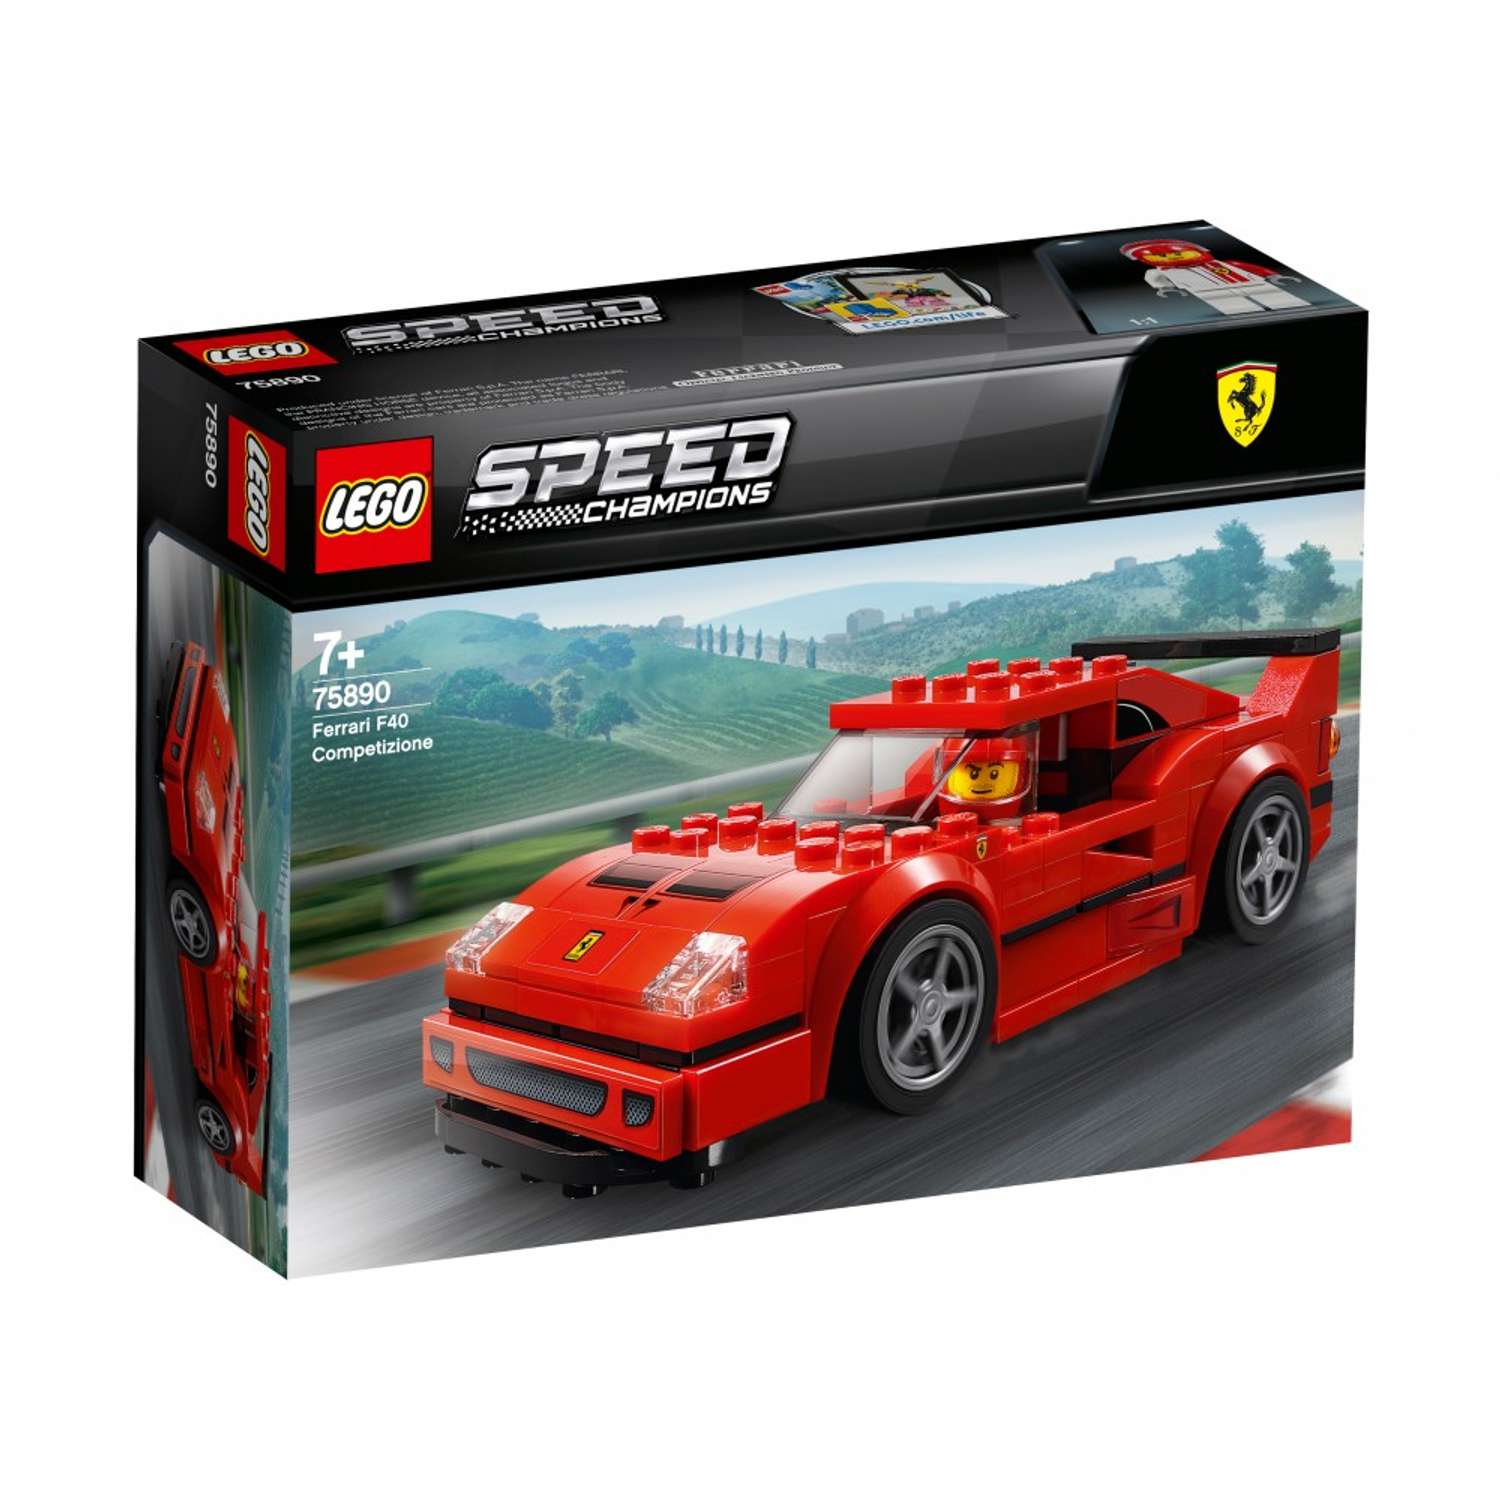 Конструктор LEGO Speed Champions Ferrari F40 Competizione L-75890 - фото 2